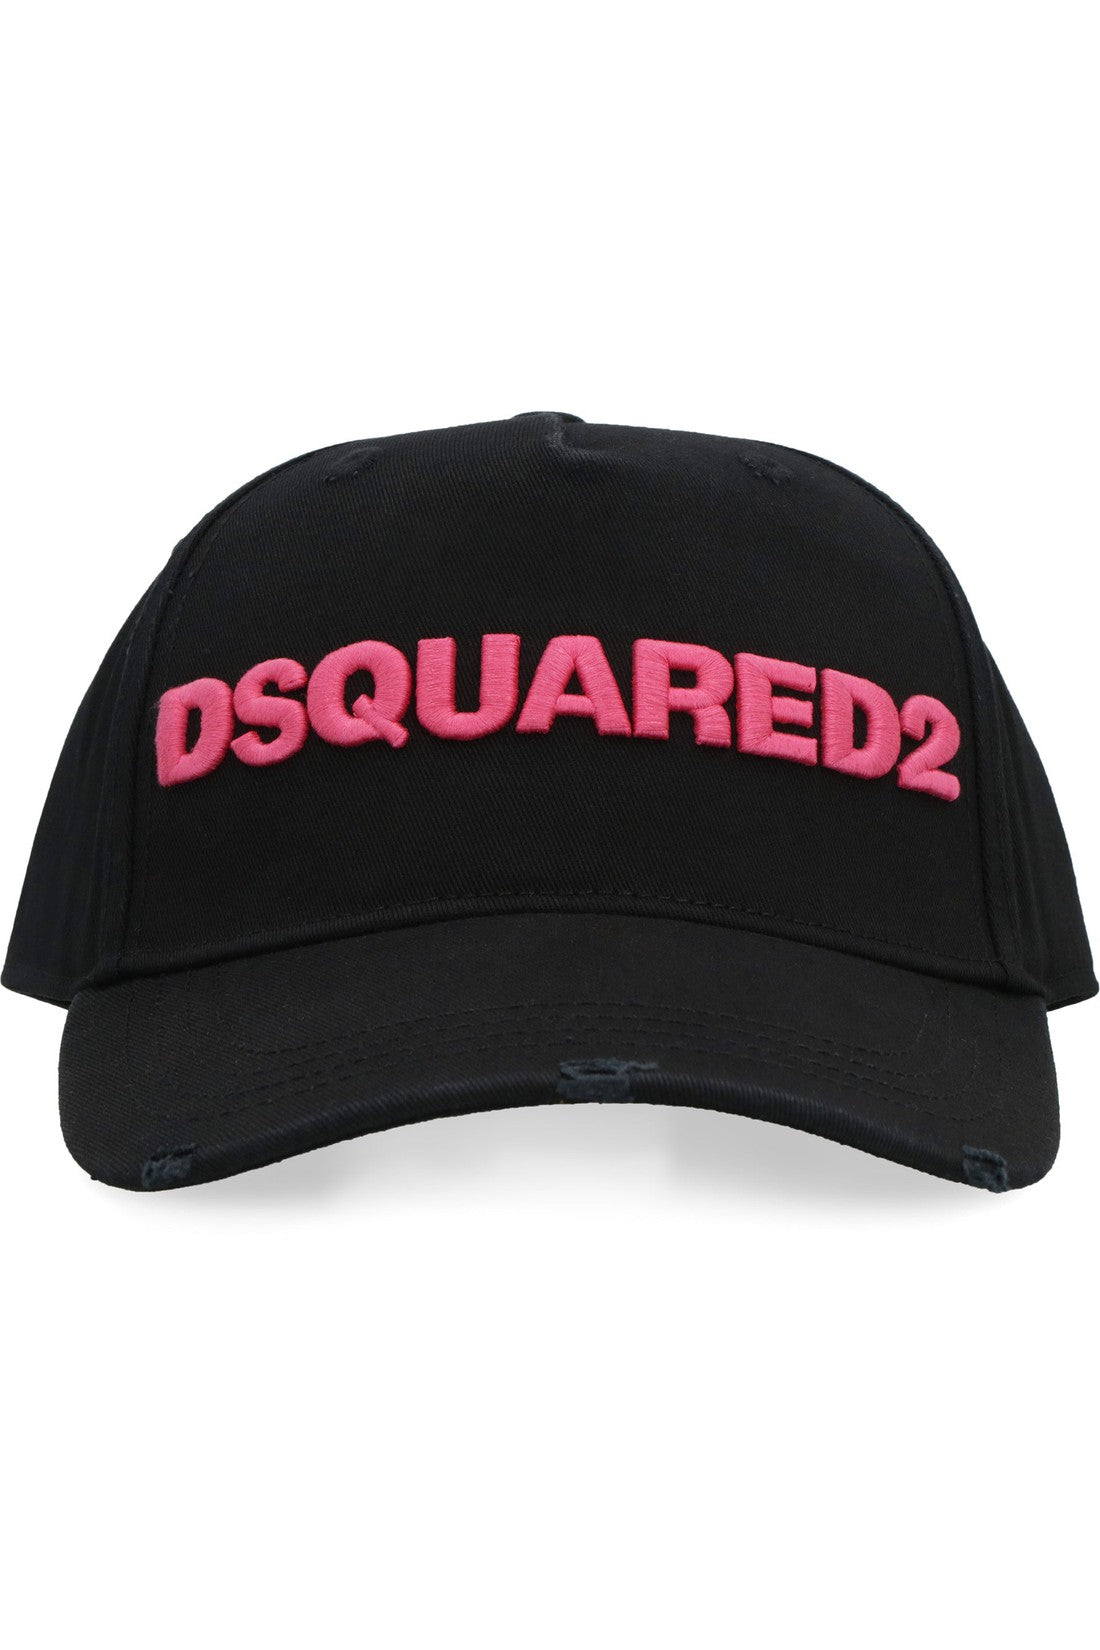 Dsquared2-OUTLET-SALE-Logo baseball cap-ARCHIVIST